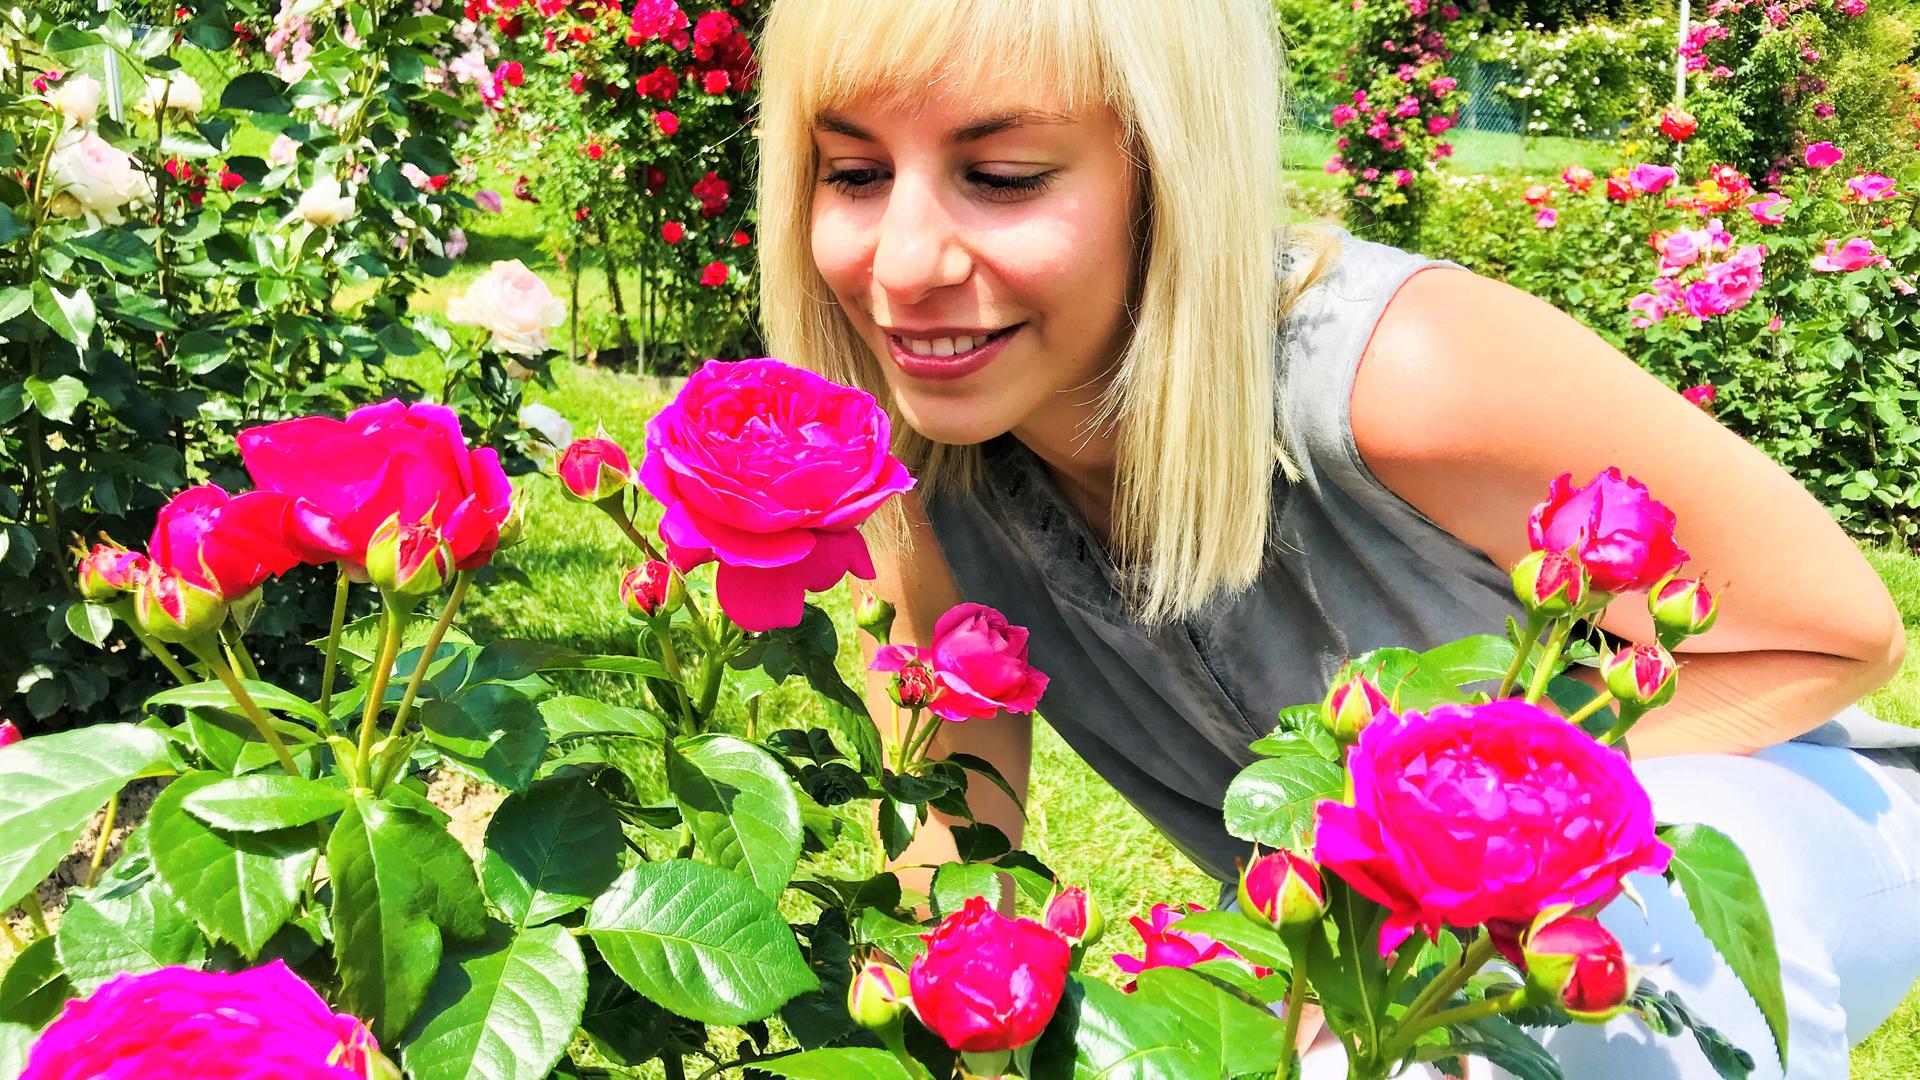 Duftet intensiv: Anuschka heißt die "Goldene Rose von Baden-Baden". Sie gefällt auch Vanessa Bock, Mitarbeiterin der Bäderstadt.